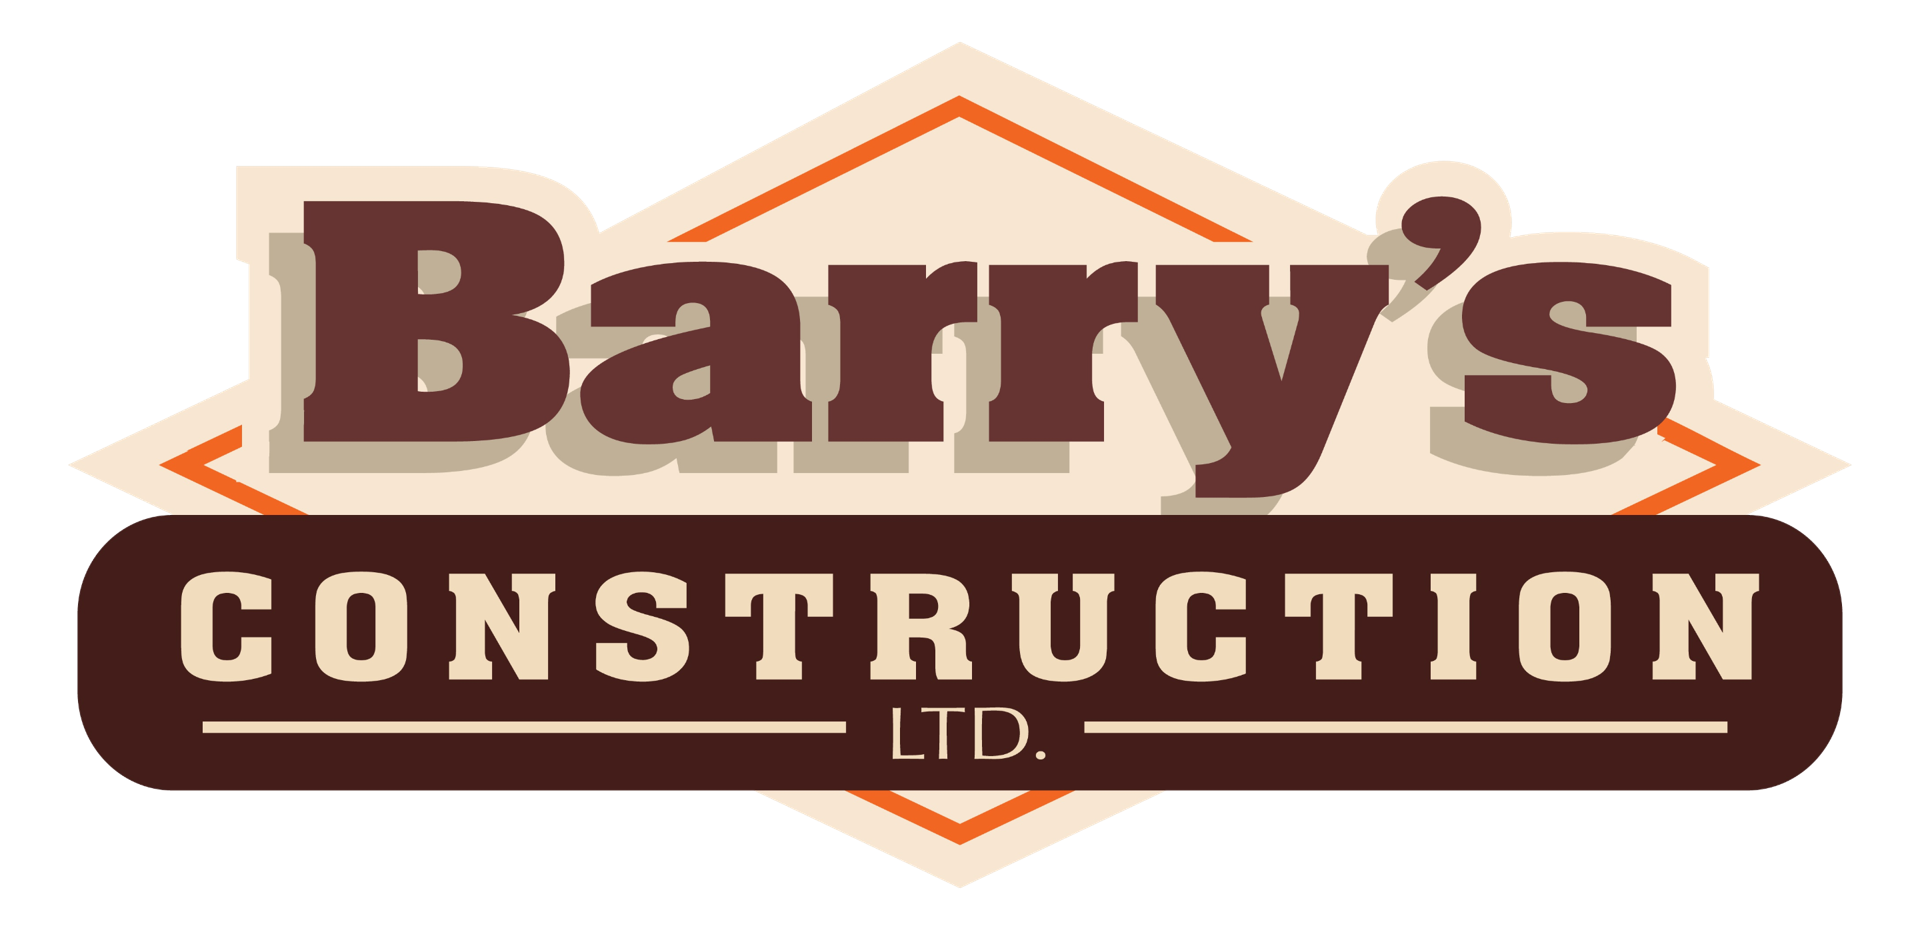 Barry's Contruction